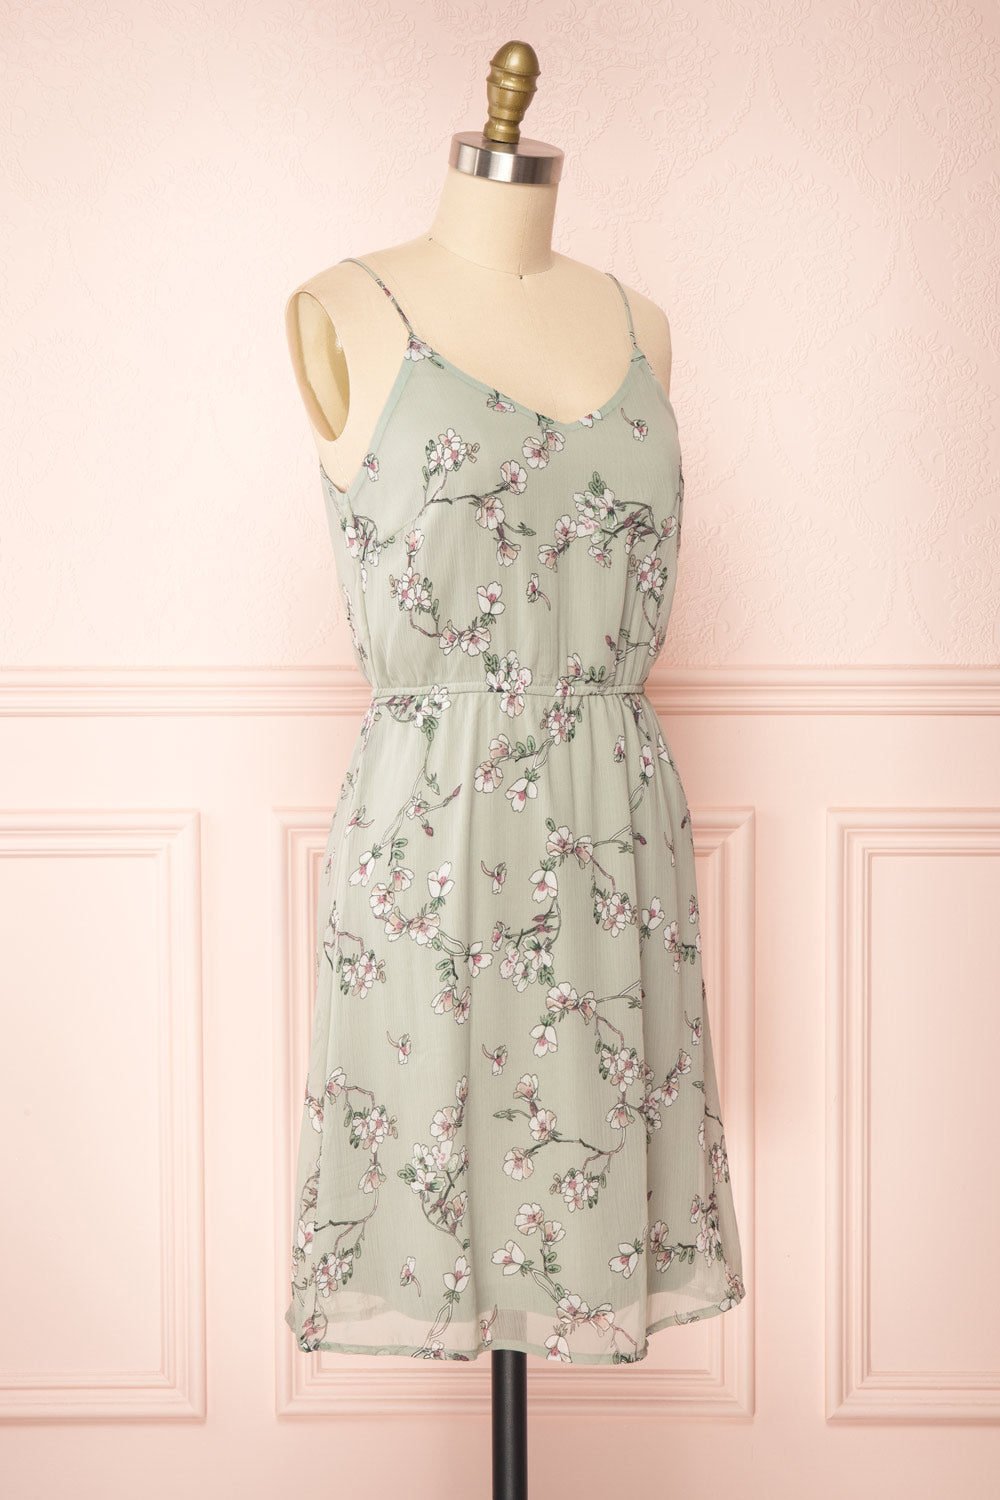 Stine Mint Short Floral Dress w/ Thin Straps | Boutique 1861 side view